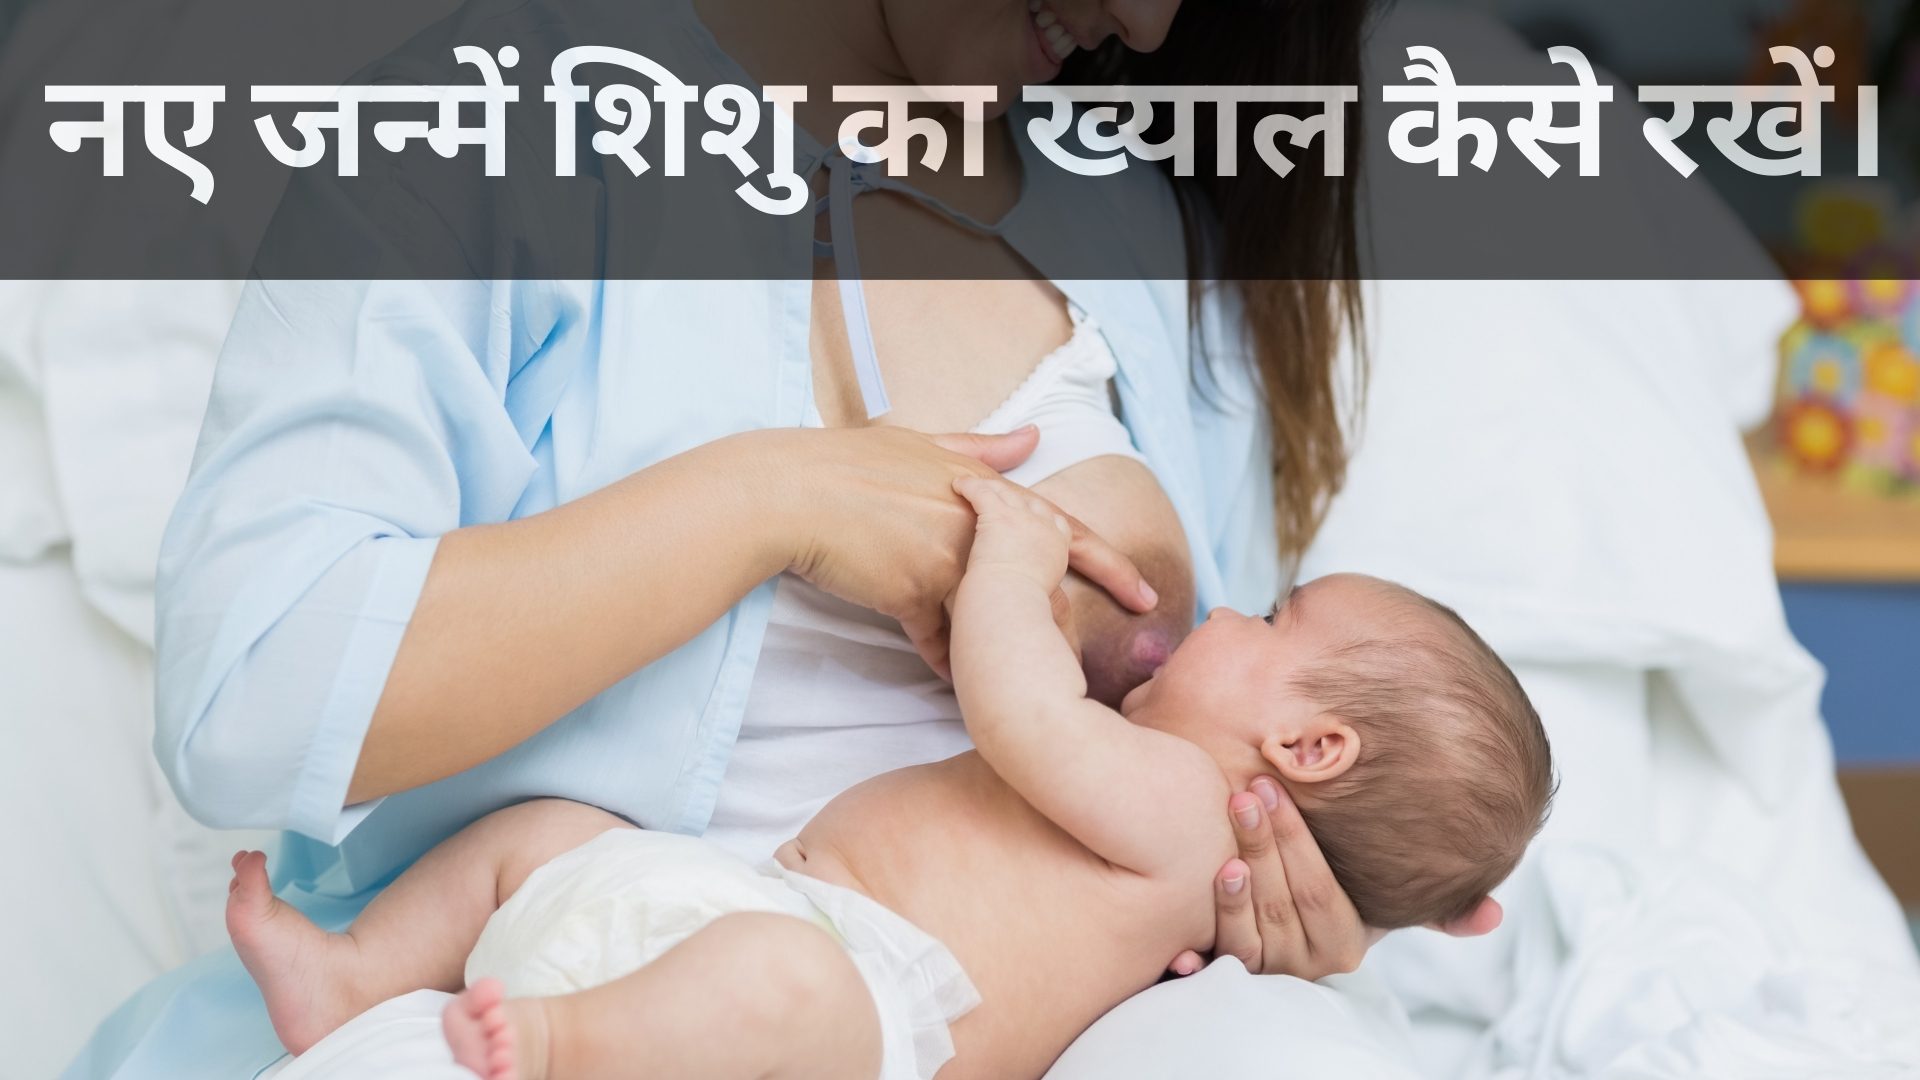 नए जन्में शिशु का ख्याल कैसे रखें।